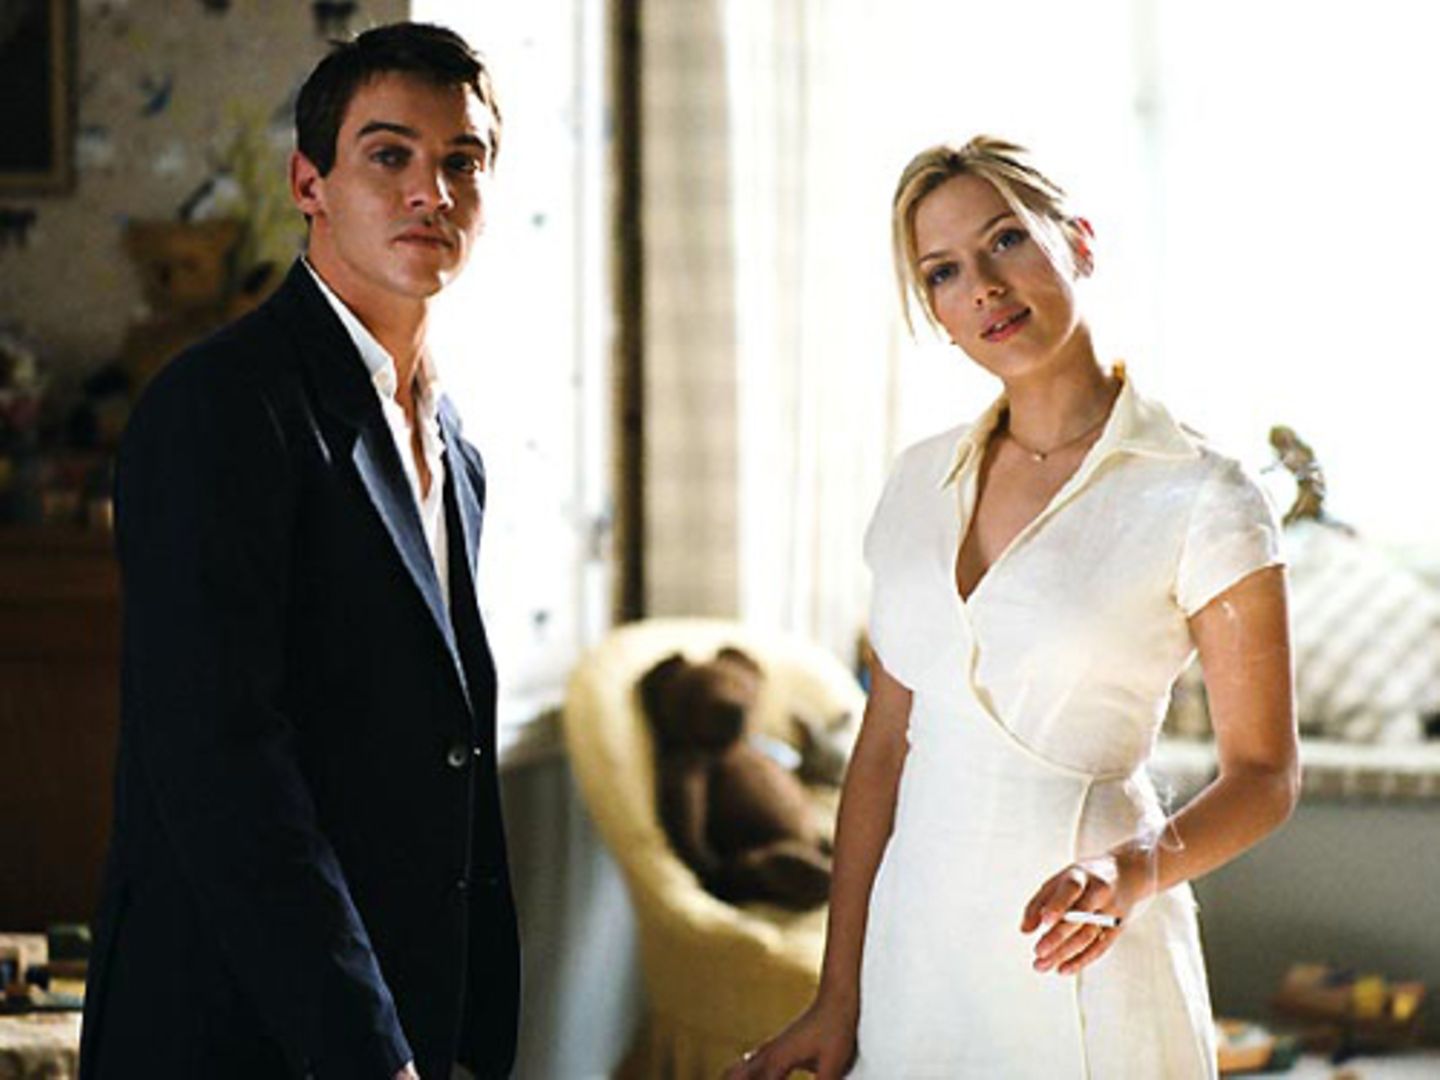 Eine verhängnisvolle Begegnung: Chris (Jonathan Rhys Meyers) trifft Nola (Scarlett Johansson) im Hause seiner Schwiegereltern in spe